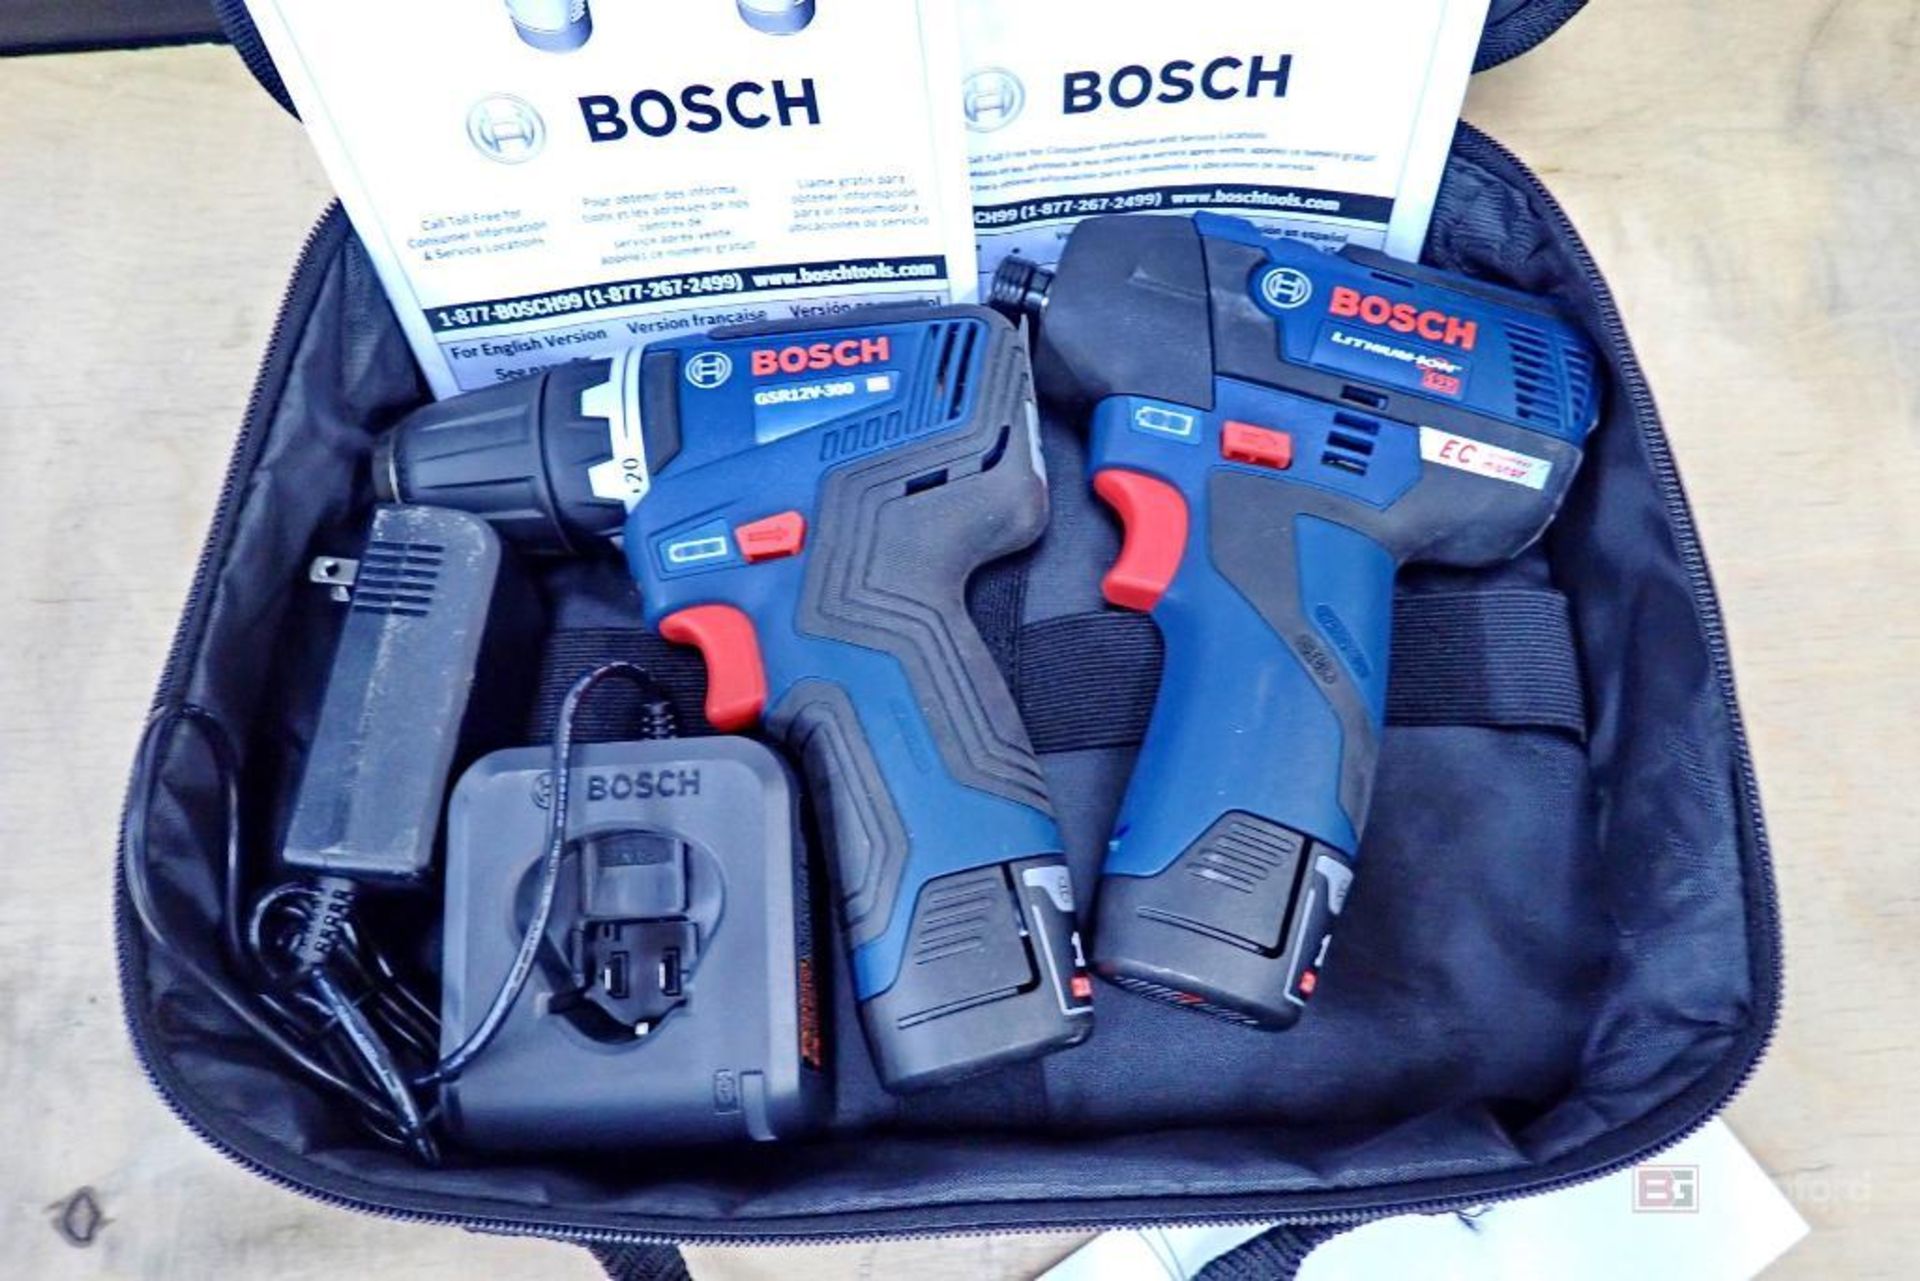 Bosch GXL12V-220B22-RT Brushless Combo Kit w/ Driller - Driver - Image 2 of 7